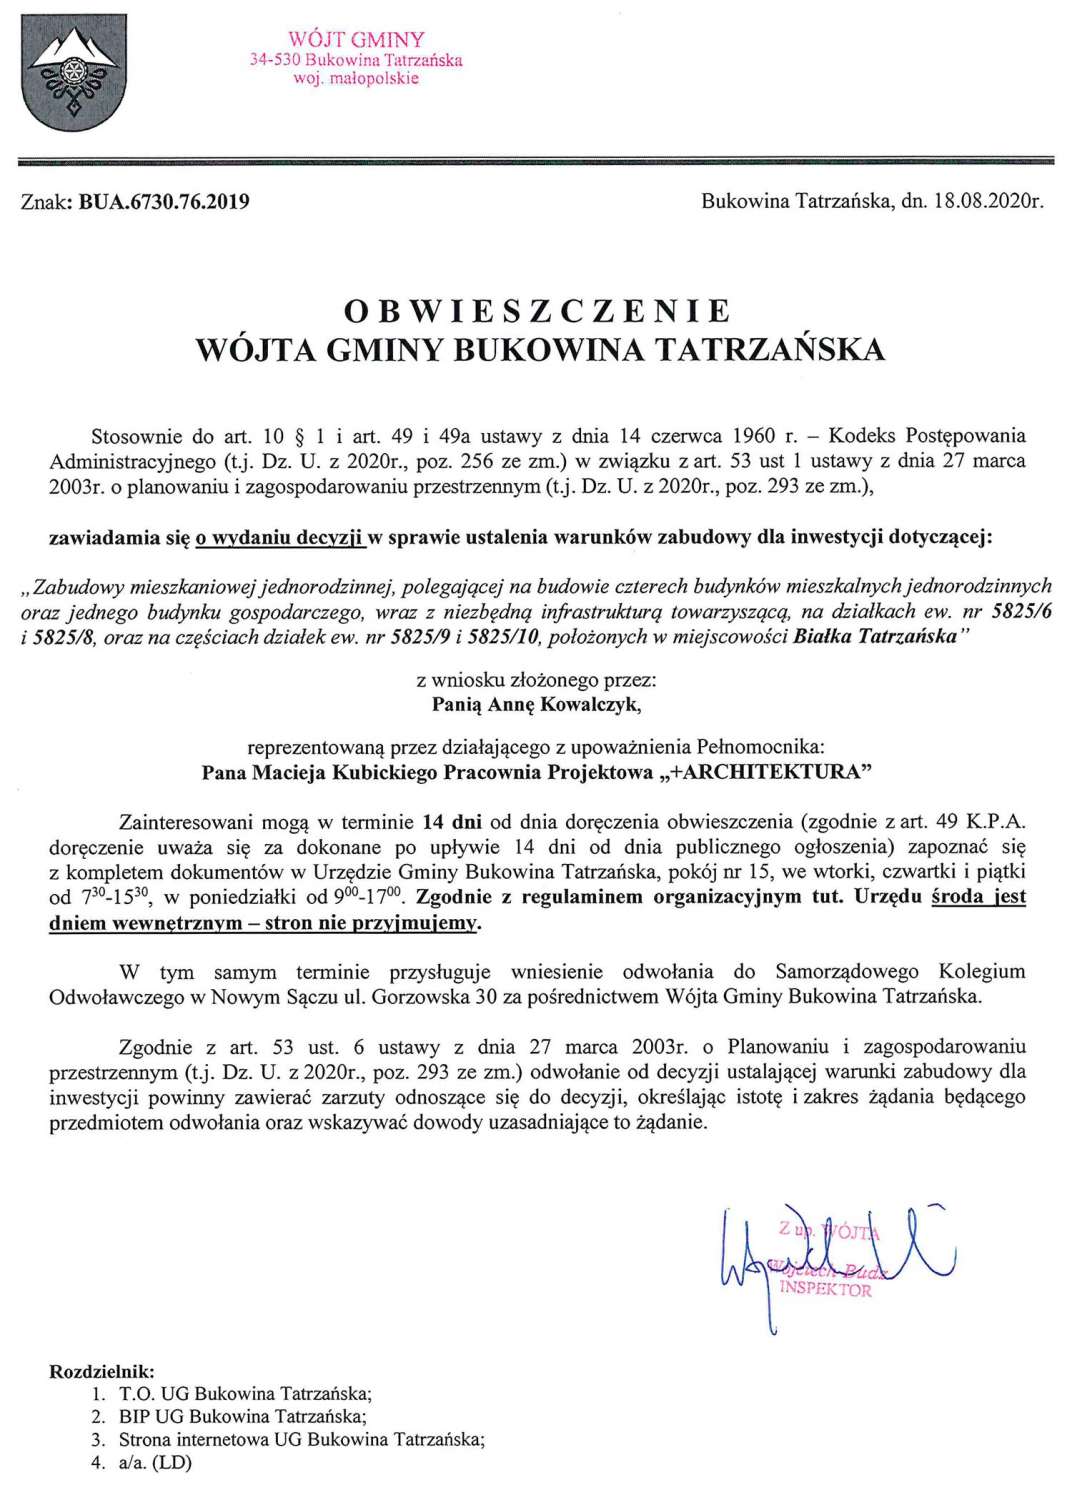 Obwieszczenie Wójta Gminy Bukowina Tatrzańska BUA 6730.76.2019